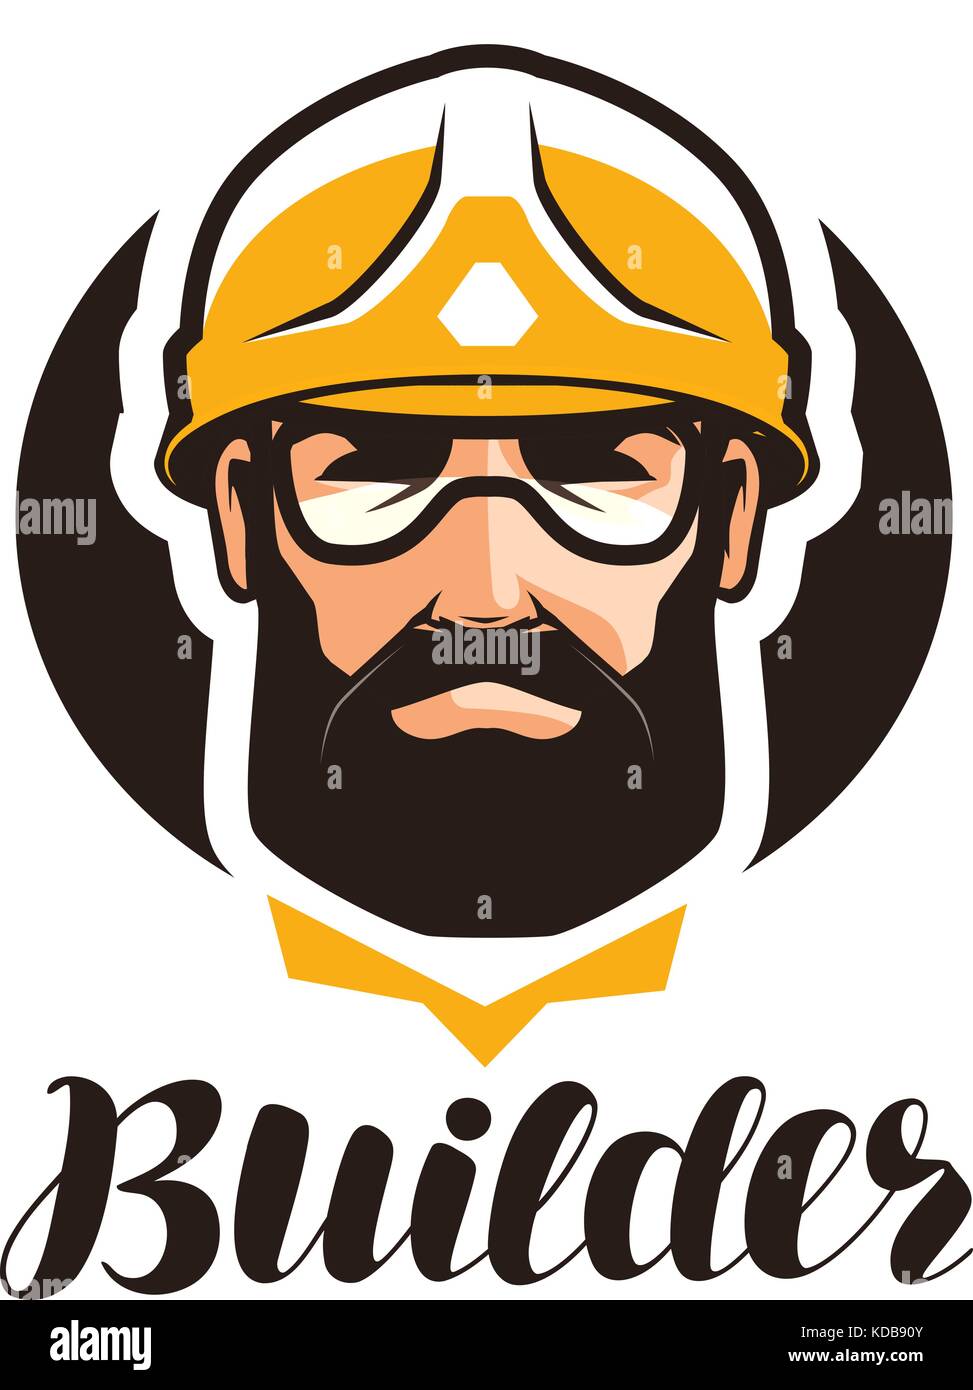 Builder, un constructor logo. La industria, soporte, servicio, reparación, revisión icono o símbolo. retrato de trabajador en casco Ilustración del Vector